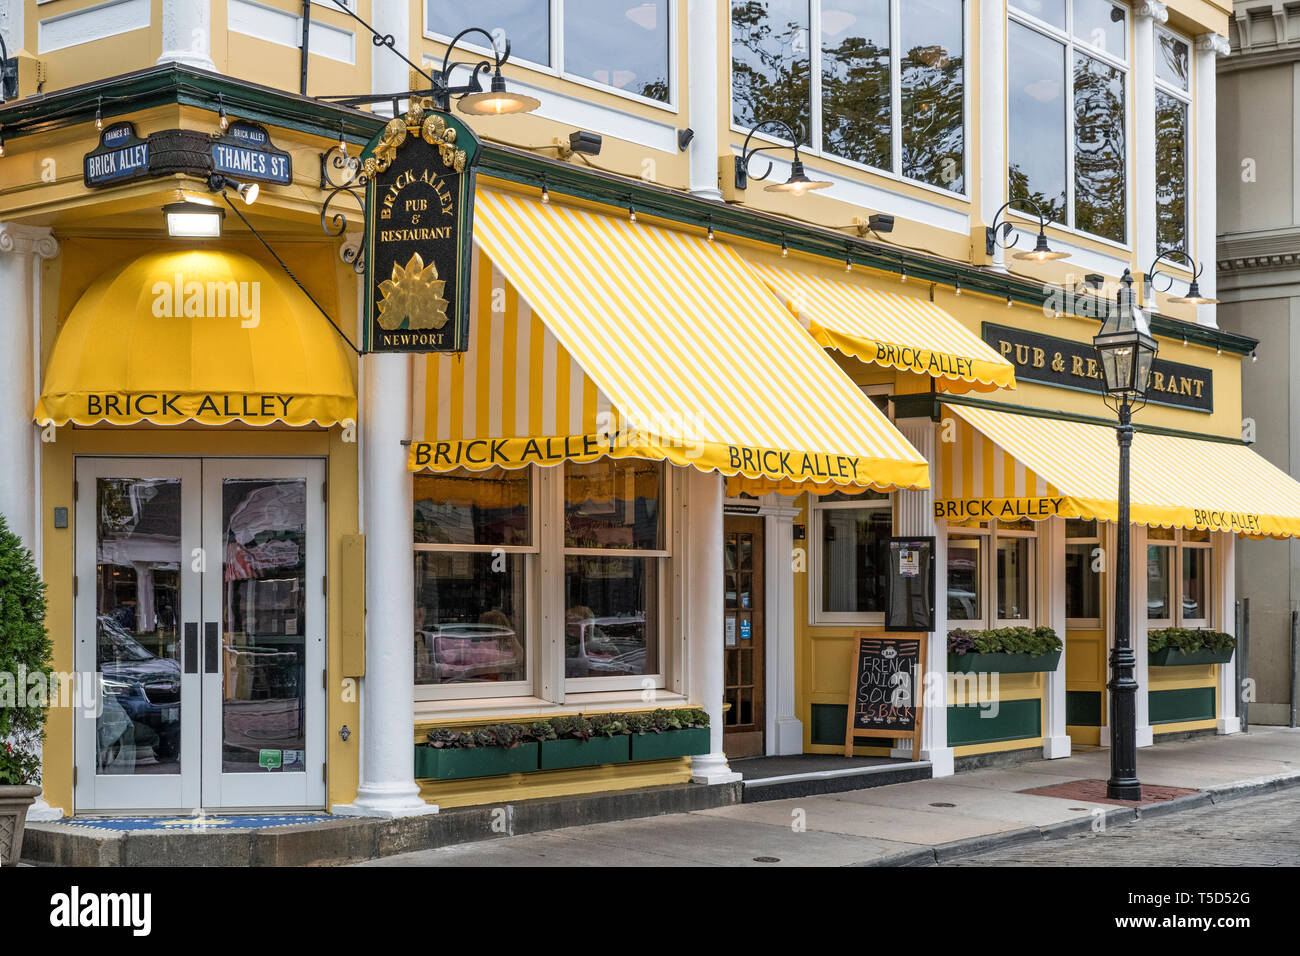 El restaurante y pub Callejón de ladrillo, en Newport, Rhode Island, EE.UU. Foto de stock